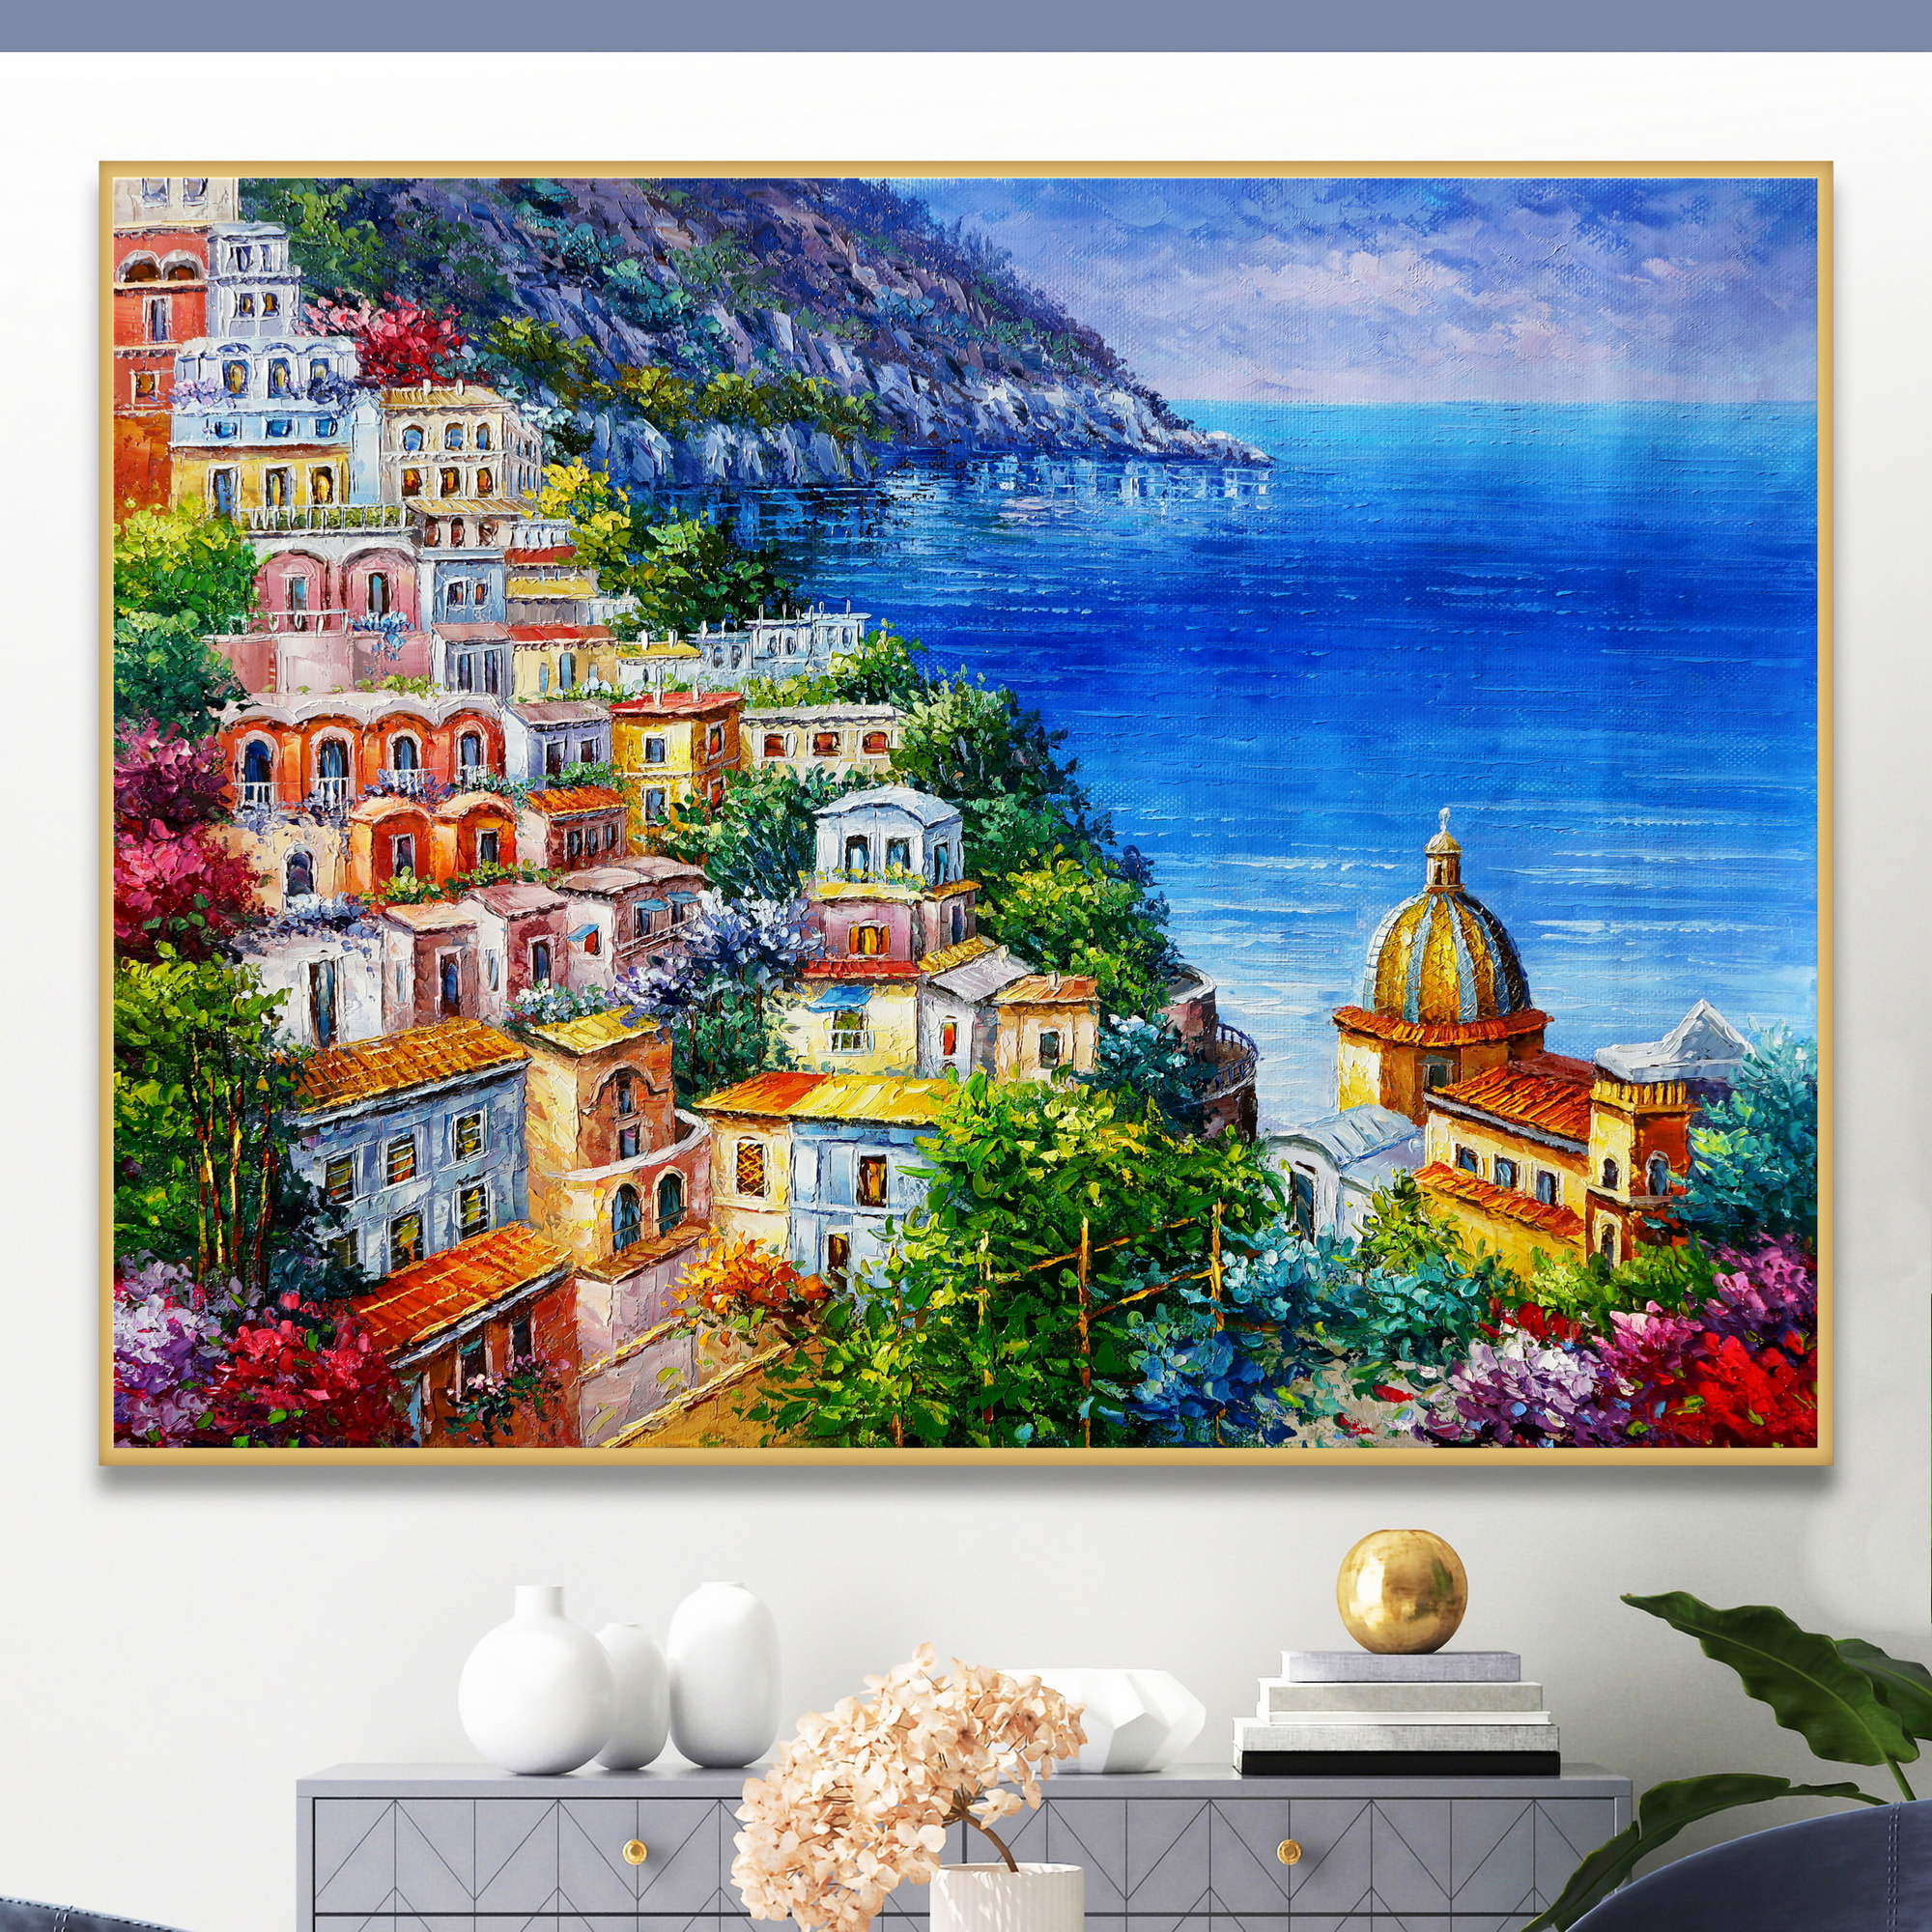 Dipinti del pittoresco borgo di Positano nella costiera amalfitana